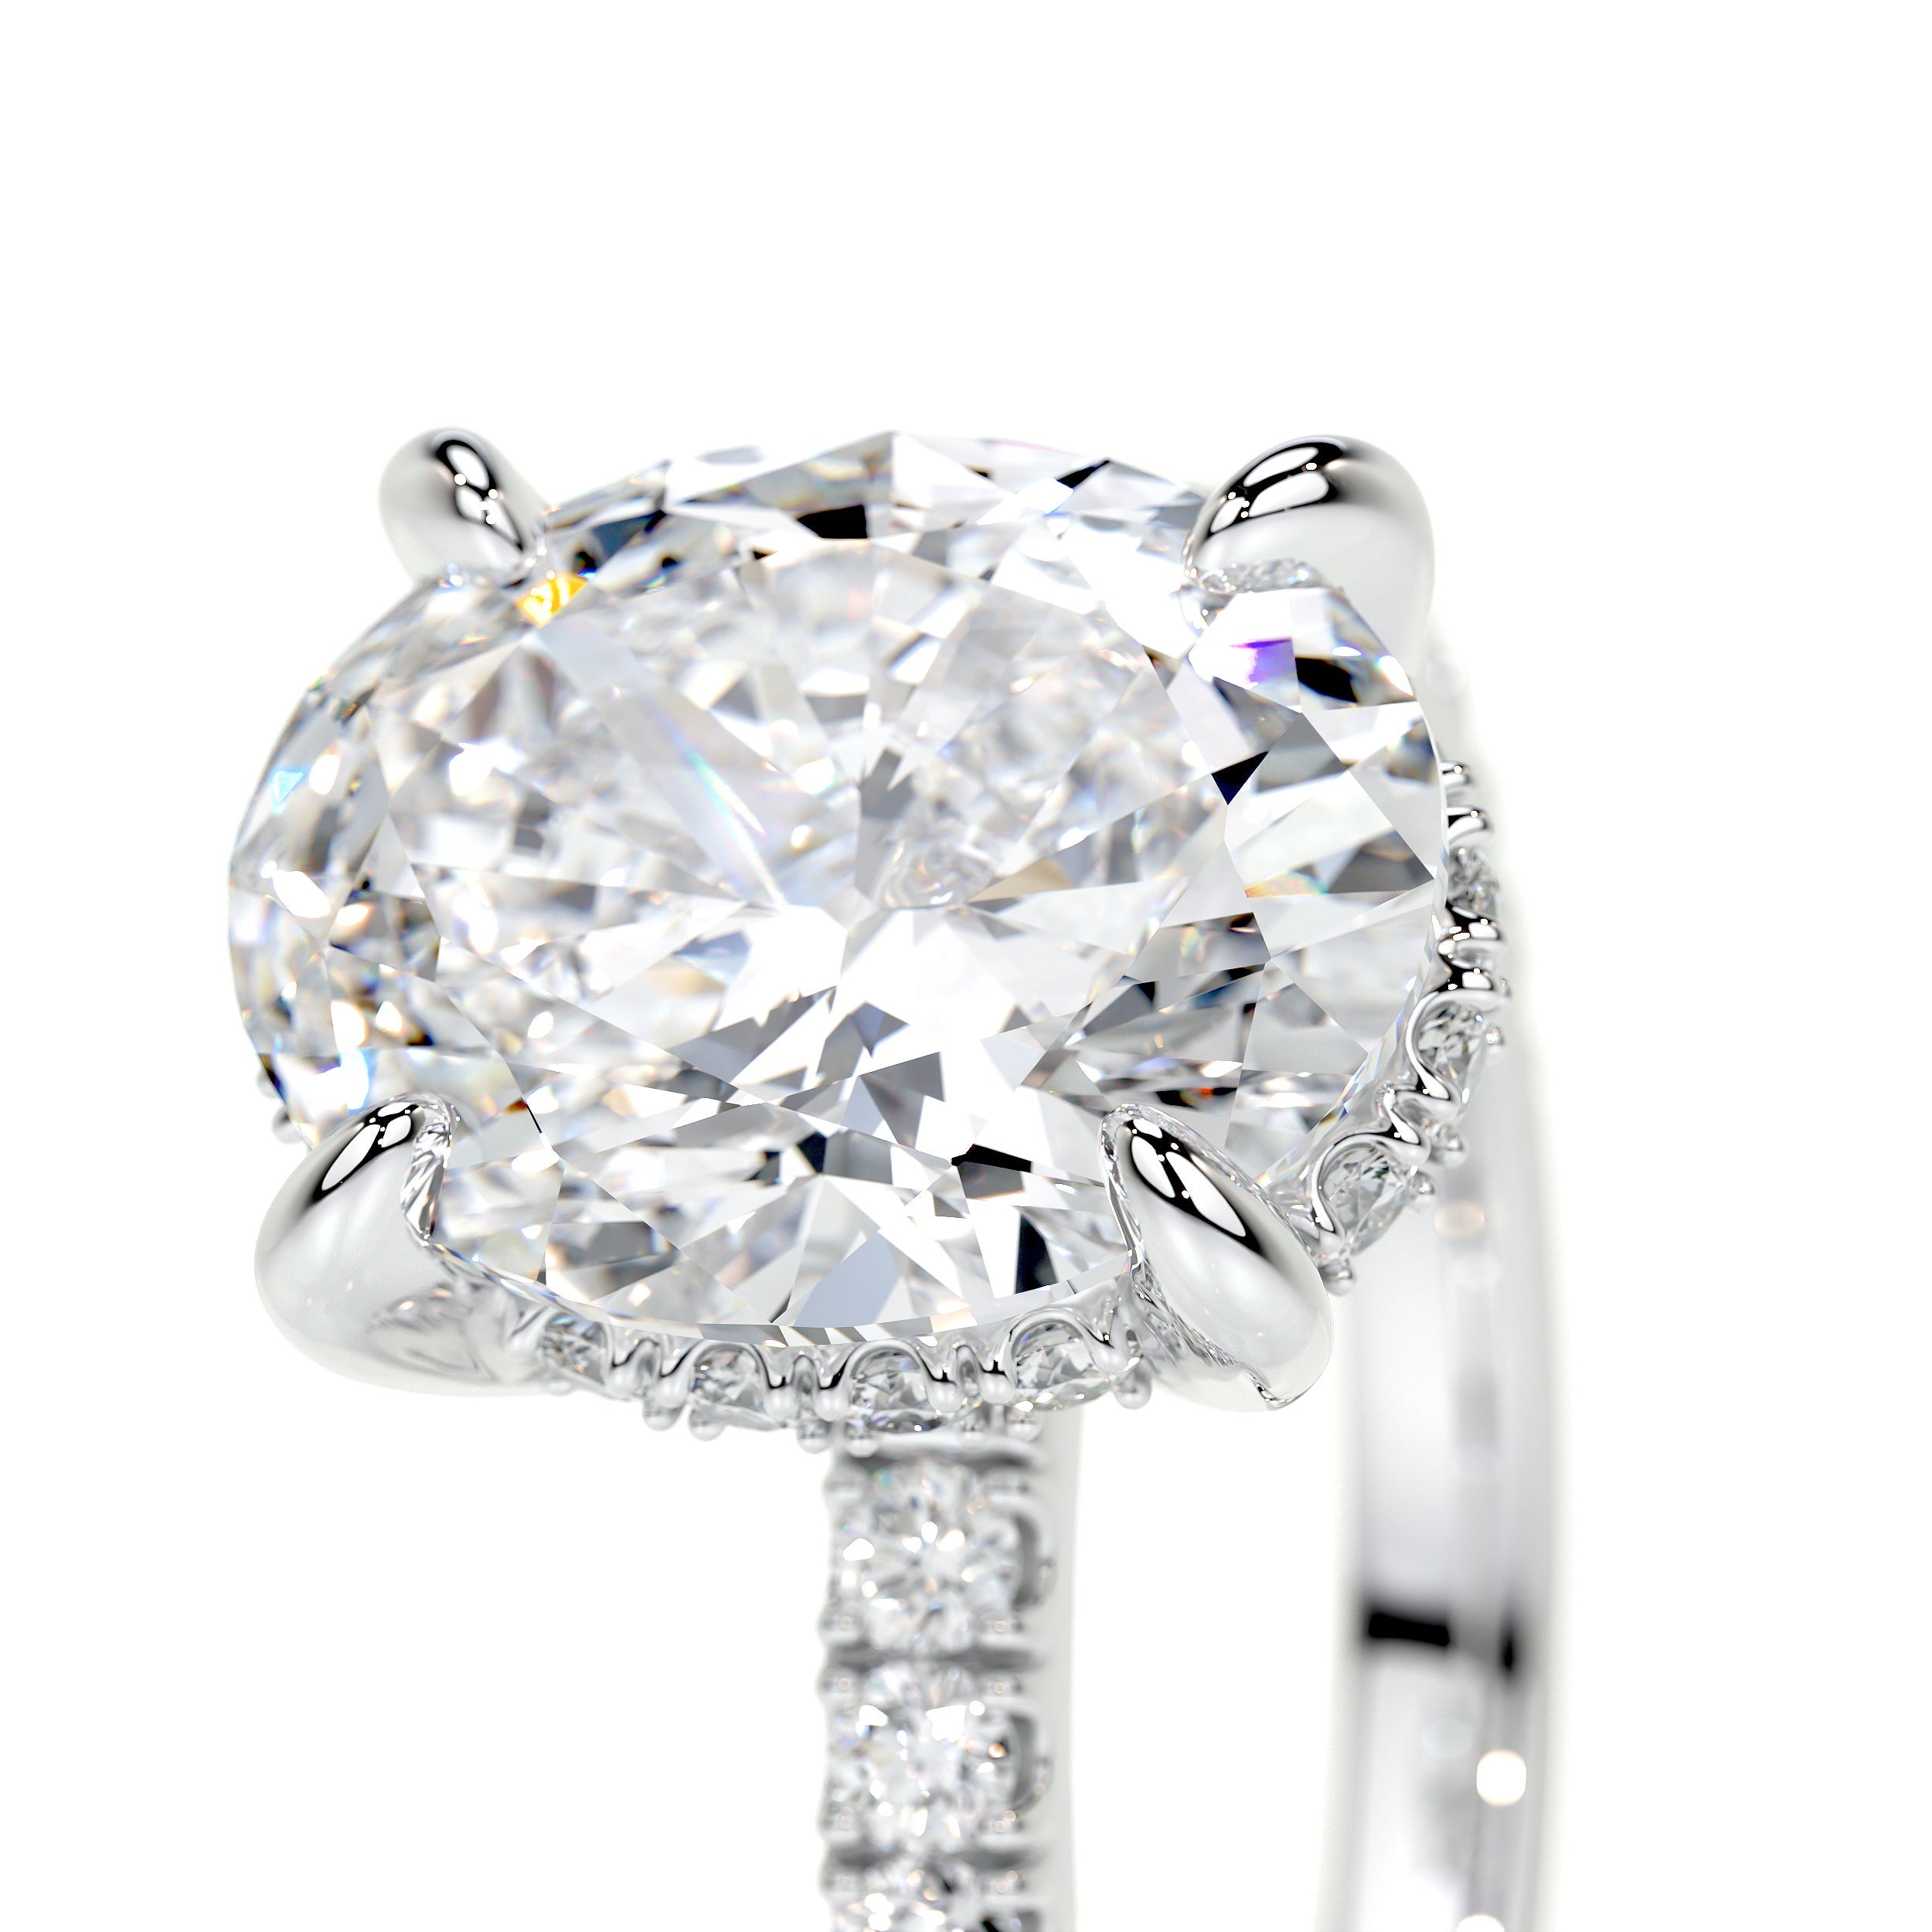 Lucy Lab Grown Diamond Ring   (2.5 Carat) -14K White Gold